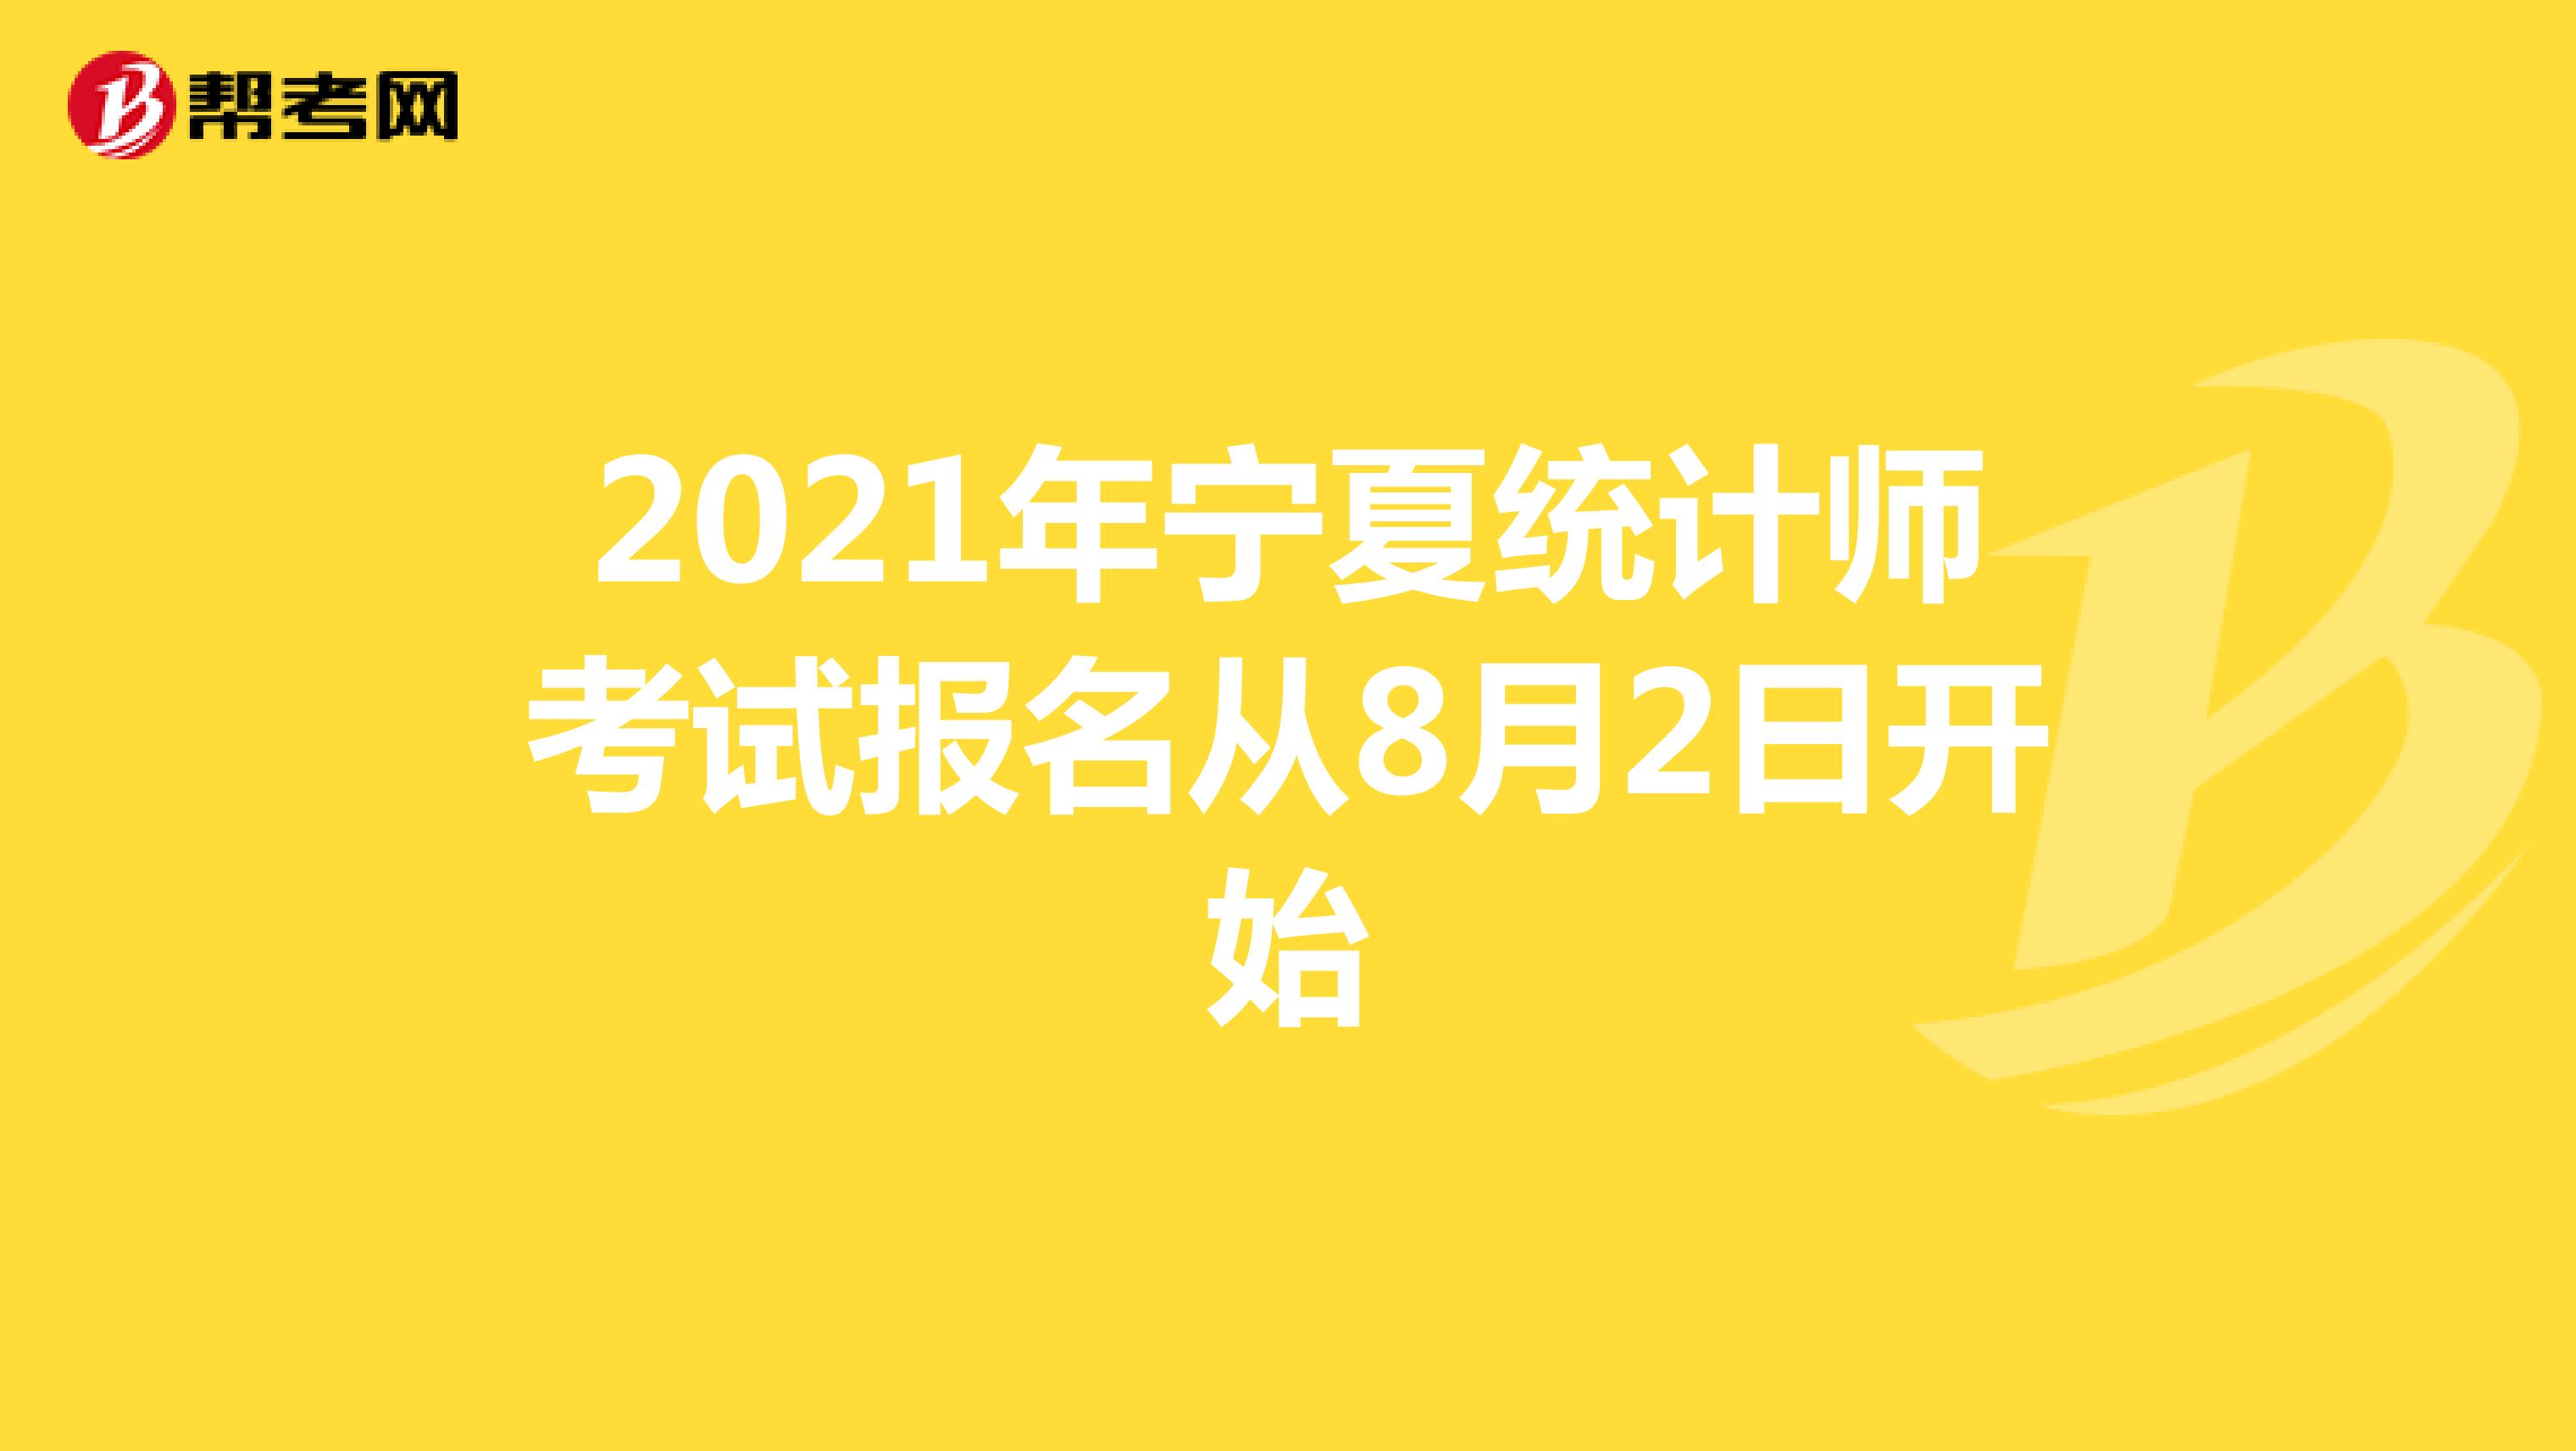 2021年宁夏统计师考试报名从8月2日开始